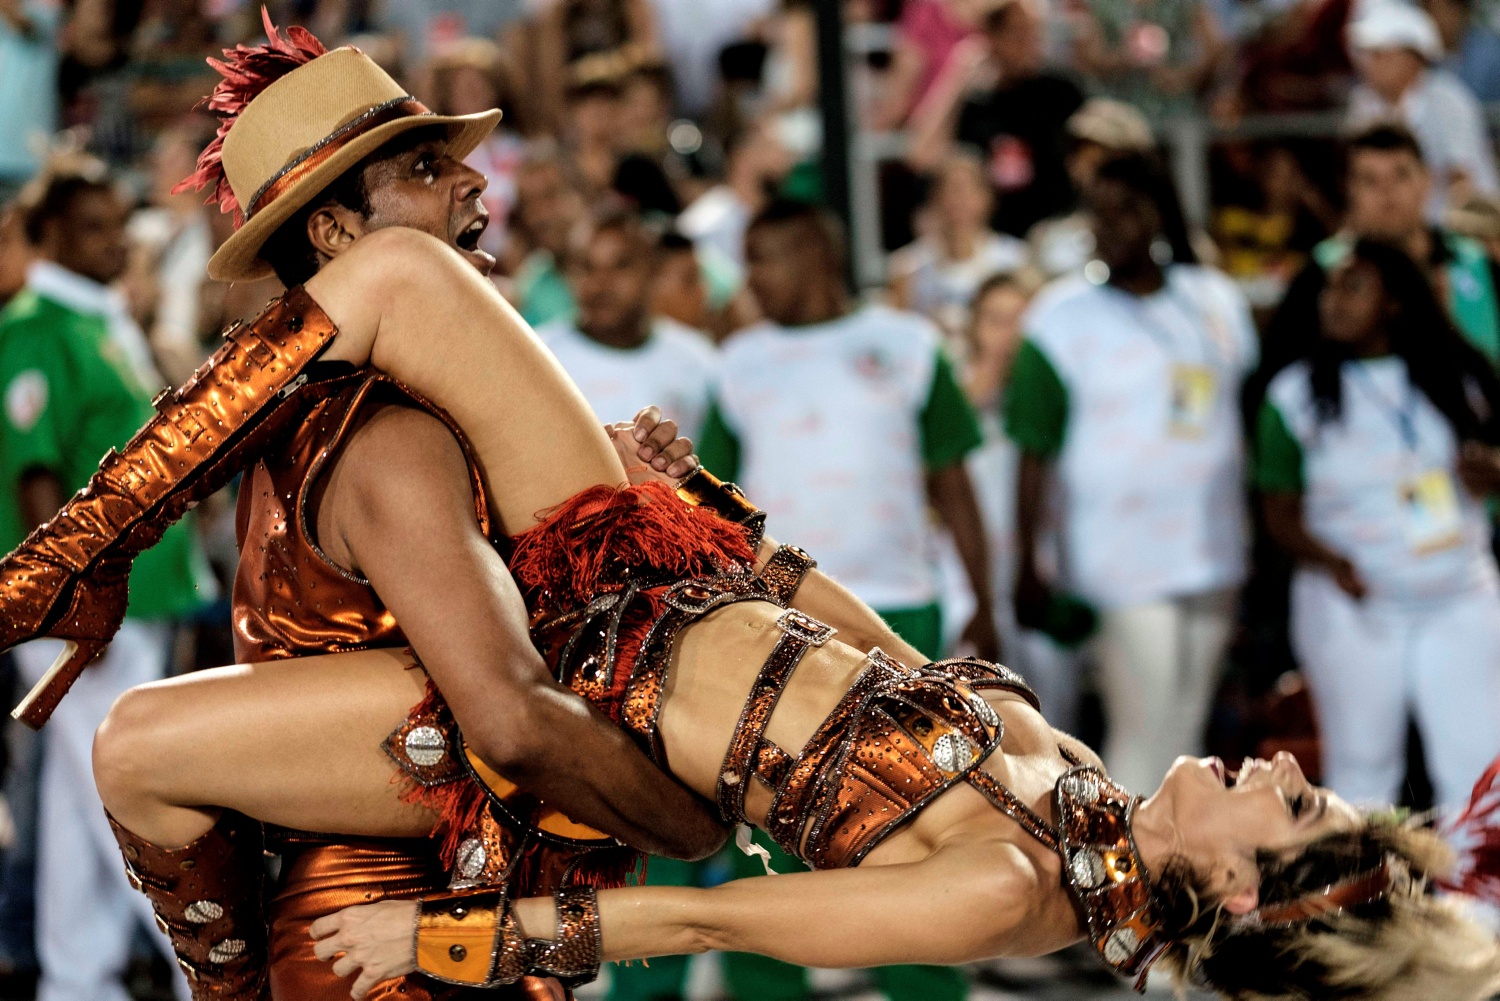 бразильском карнавале порно оргии фото 80